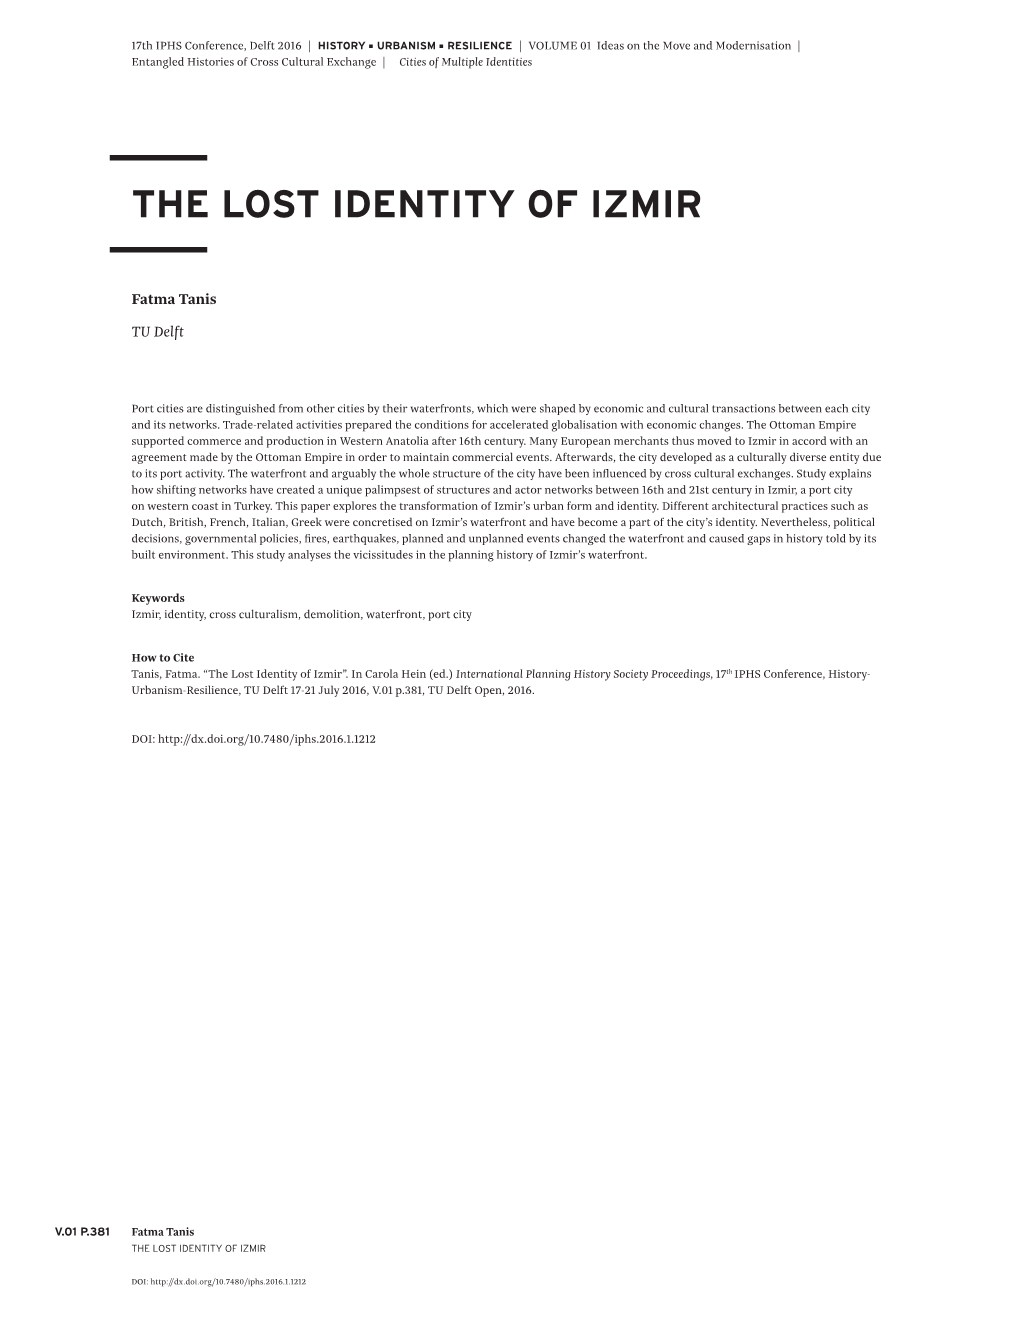 The Lost Identity of Izmir